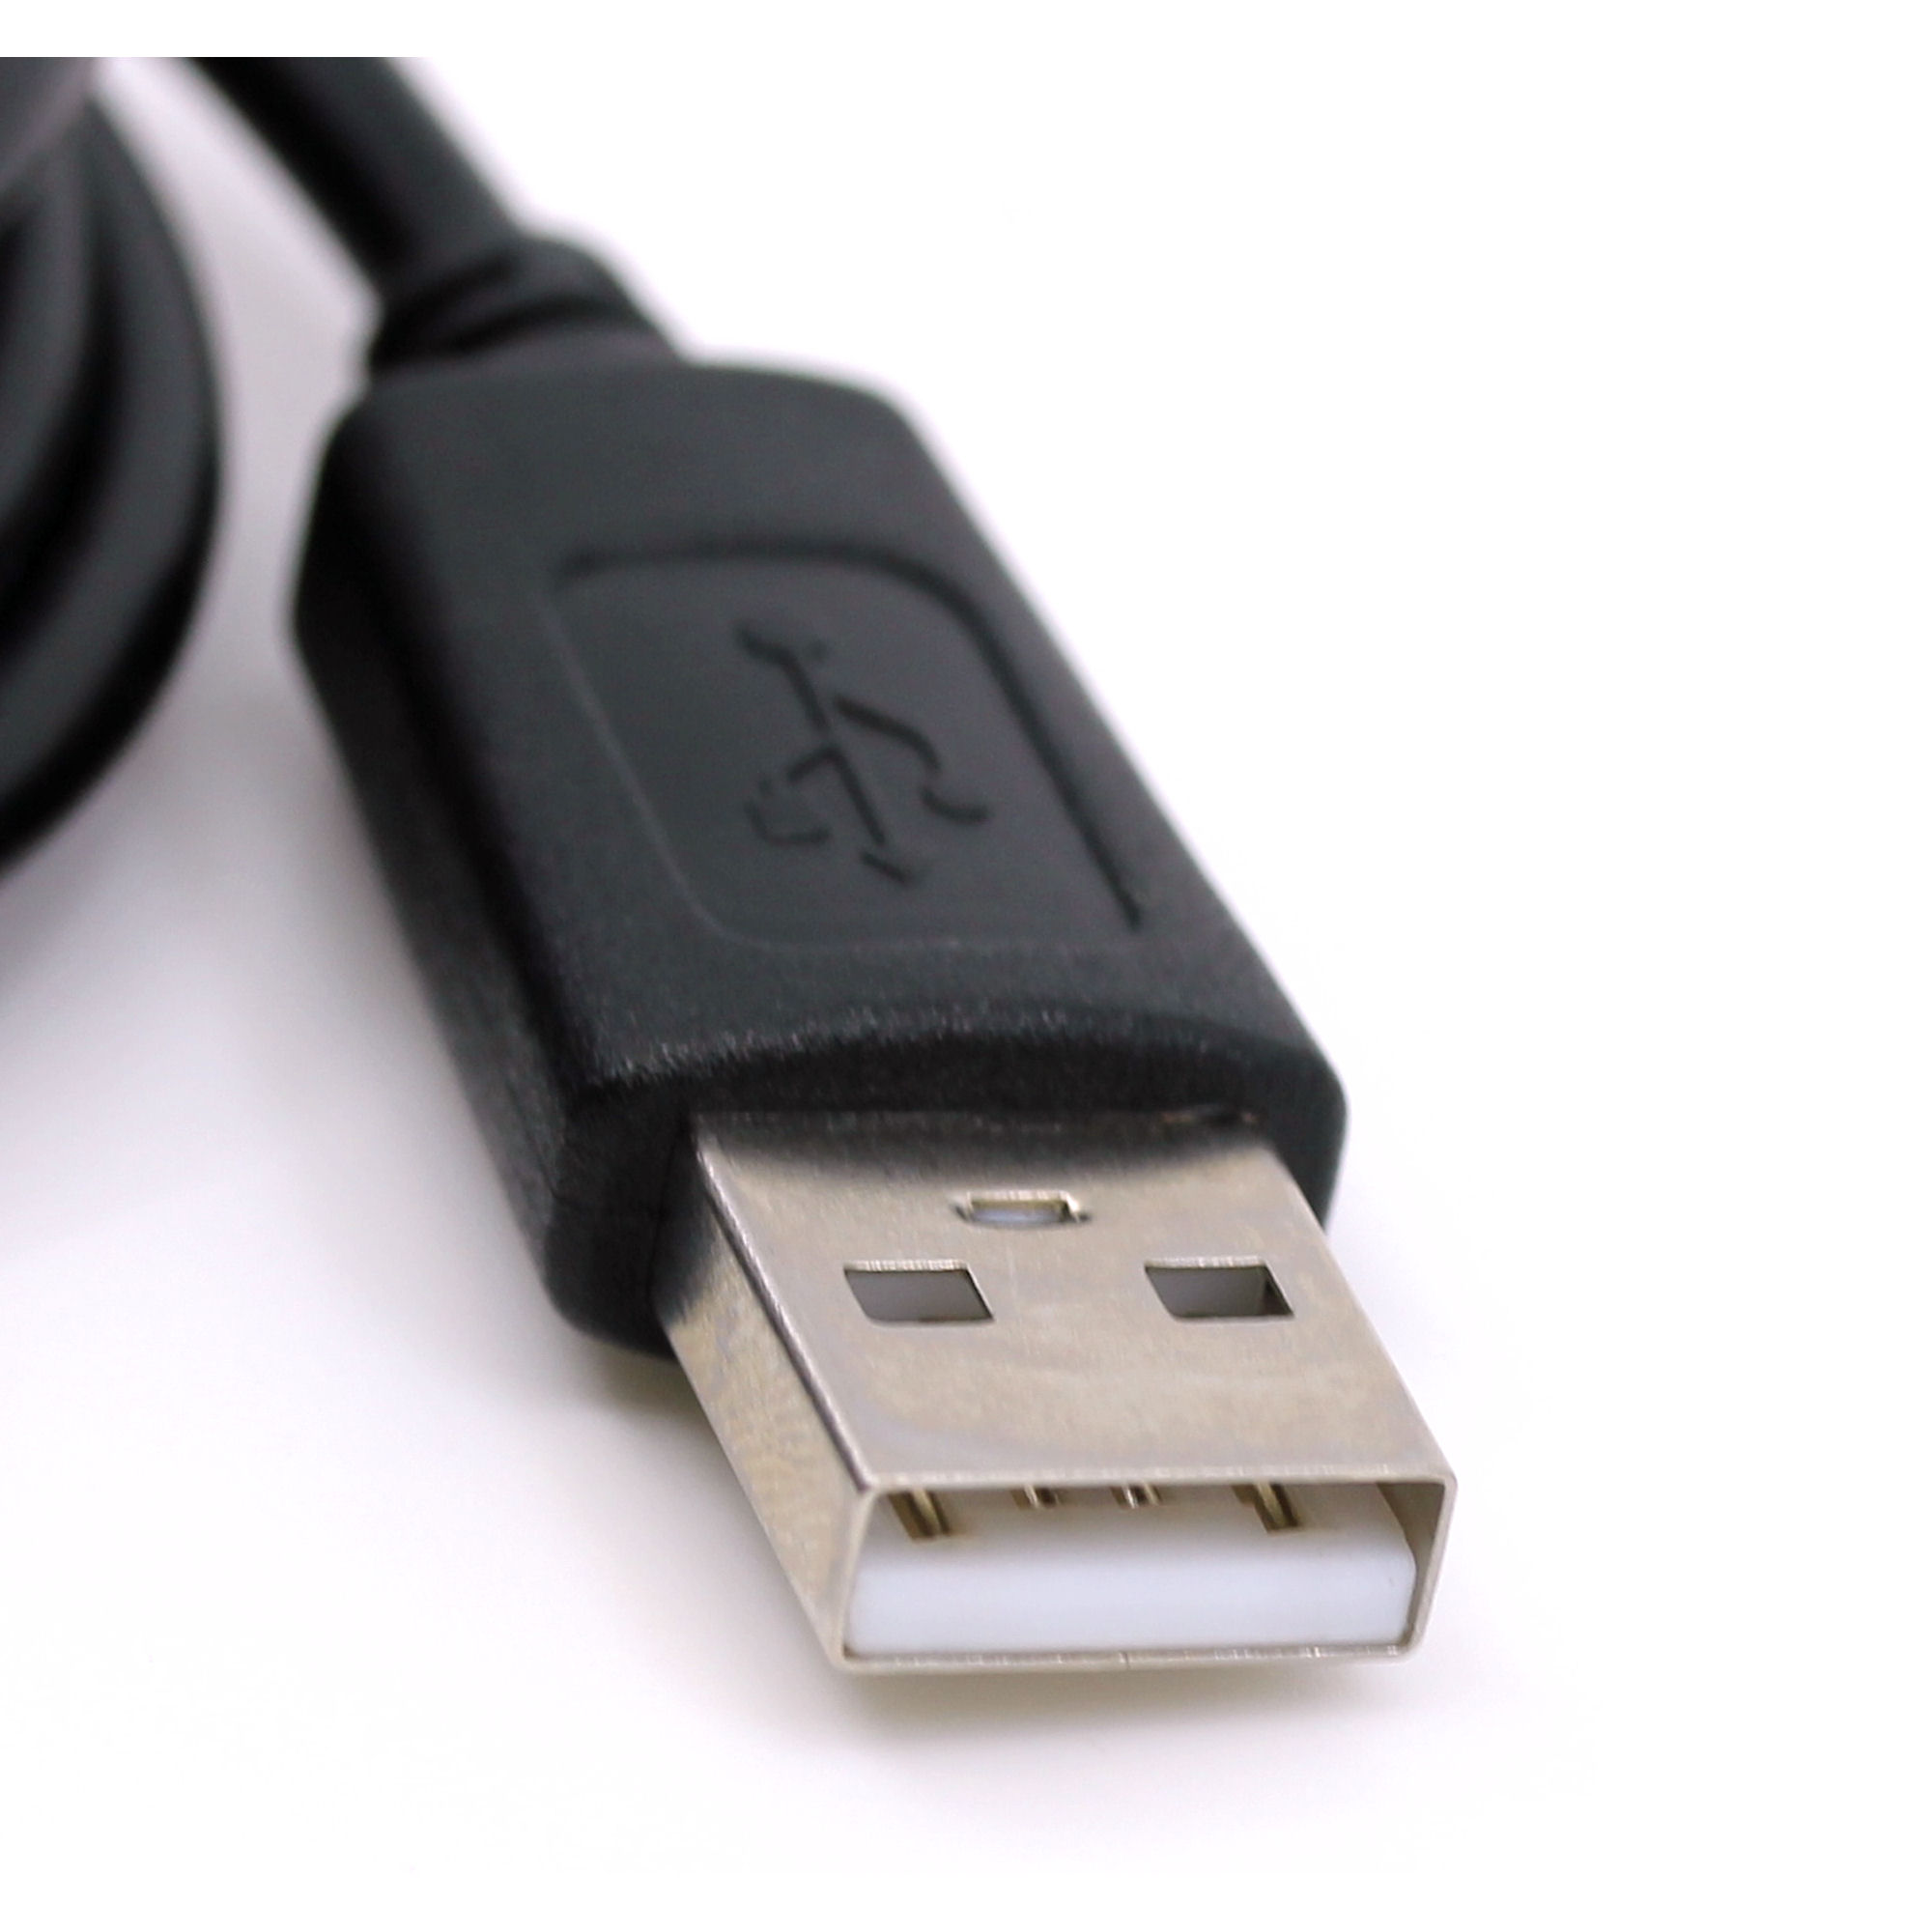 USB Datenkabel für Panasonic EW12381, EW12531, HC-V10, HC-V100, HC-V110, HC-V130, HC-V160, HC-V500